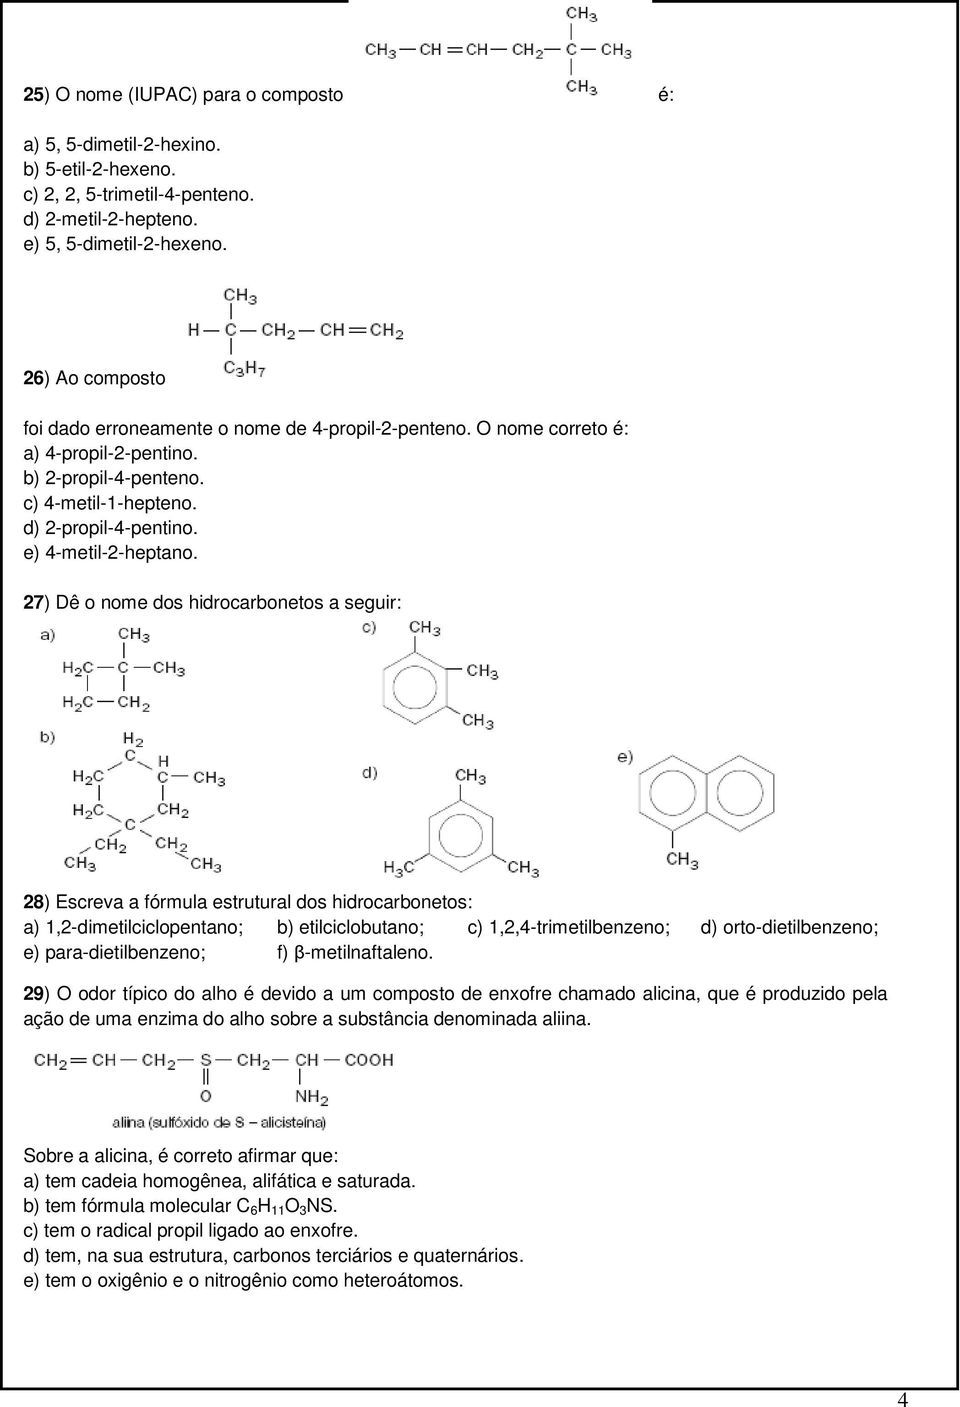 27) Dê o nome dos hidrocarbonetos a seguir: 28) Escreva a fórmula estrutural dos hidrocarbonetos: a) 1,2-dimetilciclopentano; b) etilciclobutano; c) 1,2,4-trimetilbenzeno; d) orto-dietilbenzeno; e)